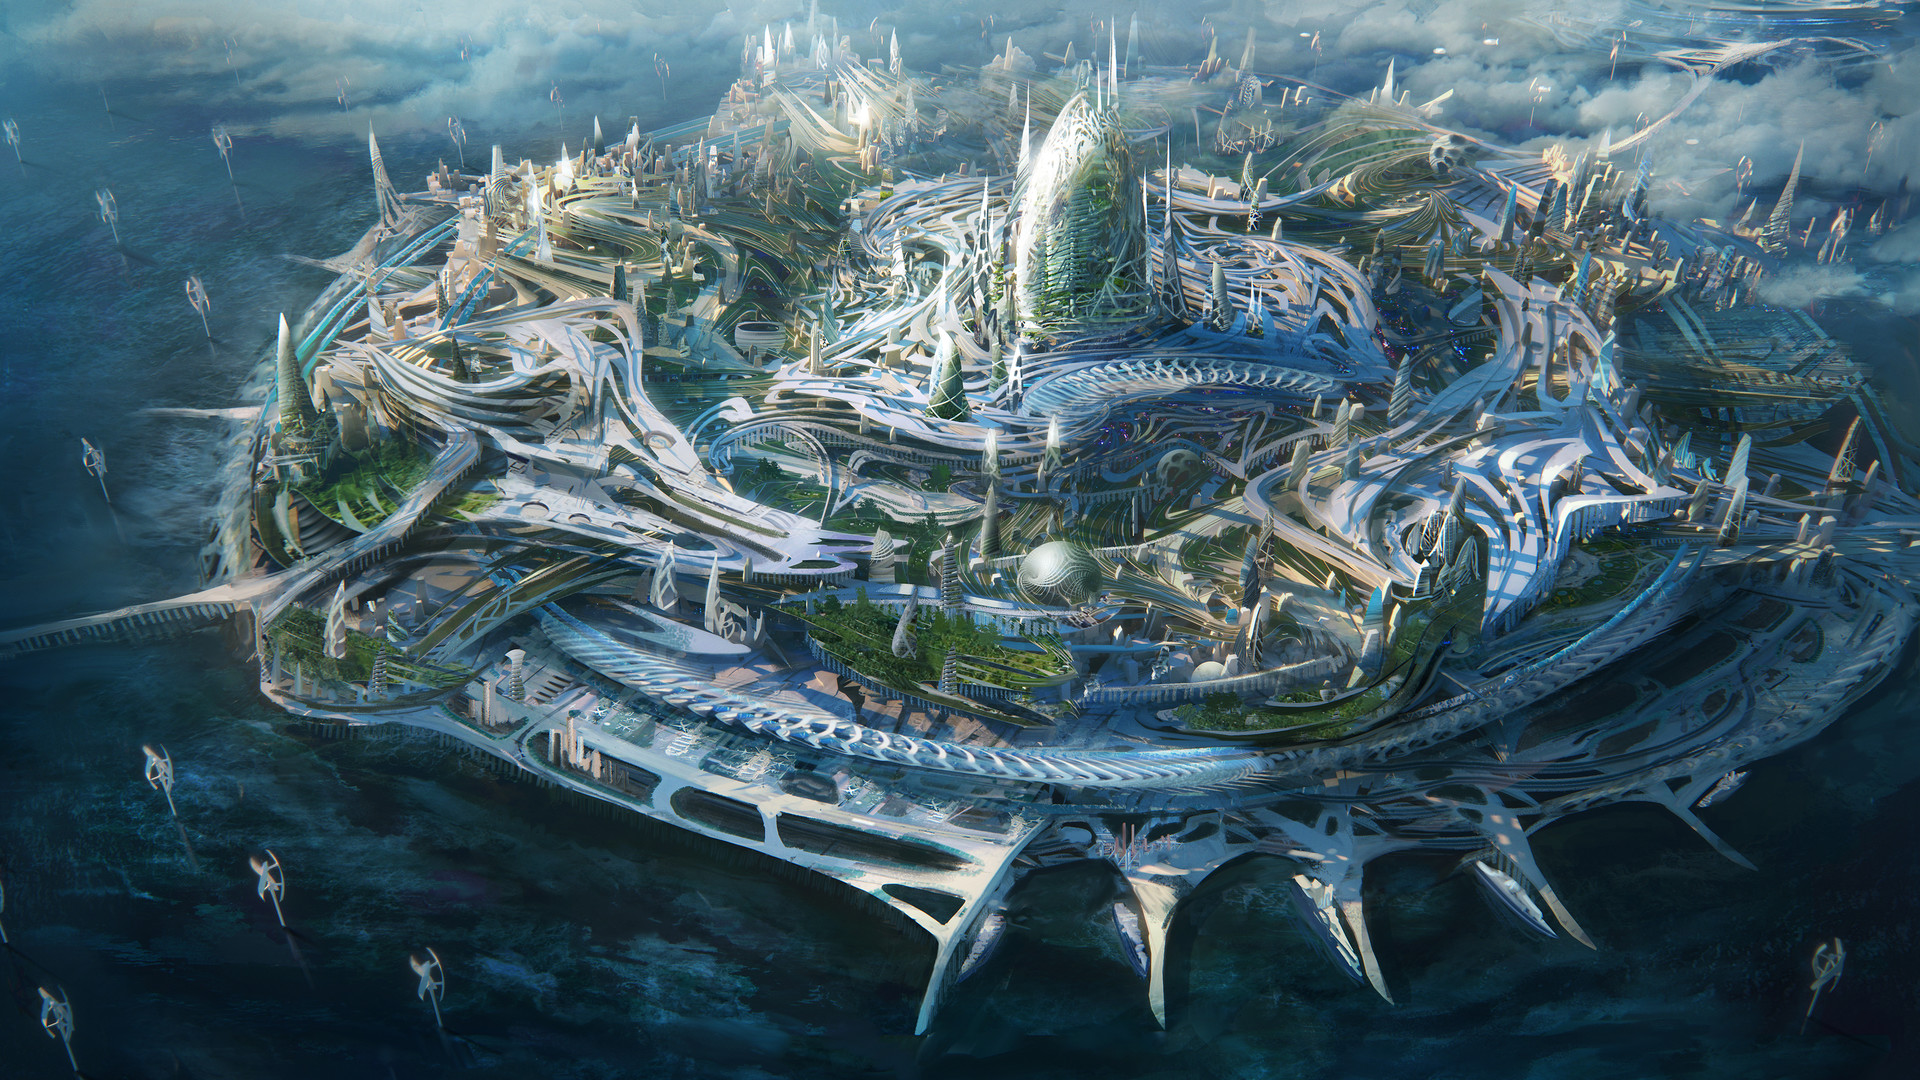 Traffic Futuristic City Sci Fi Concept Art Fantasy Landscape - Vrogue